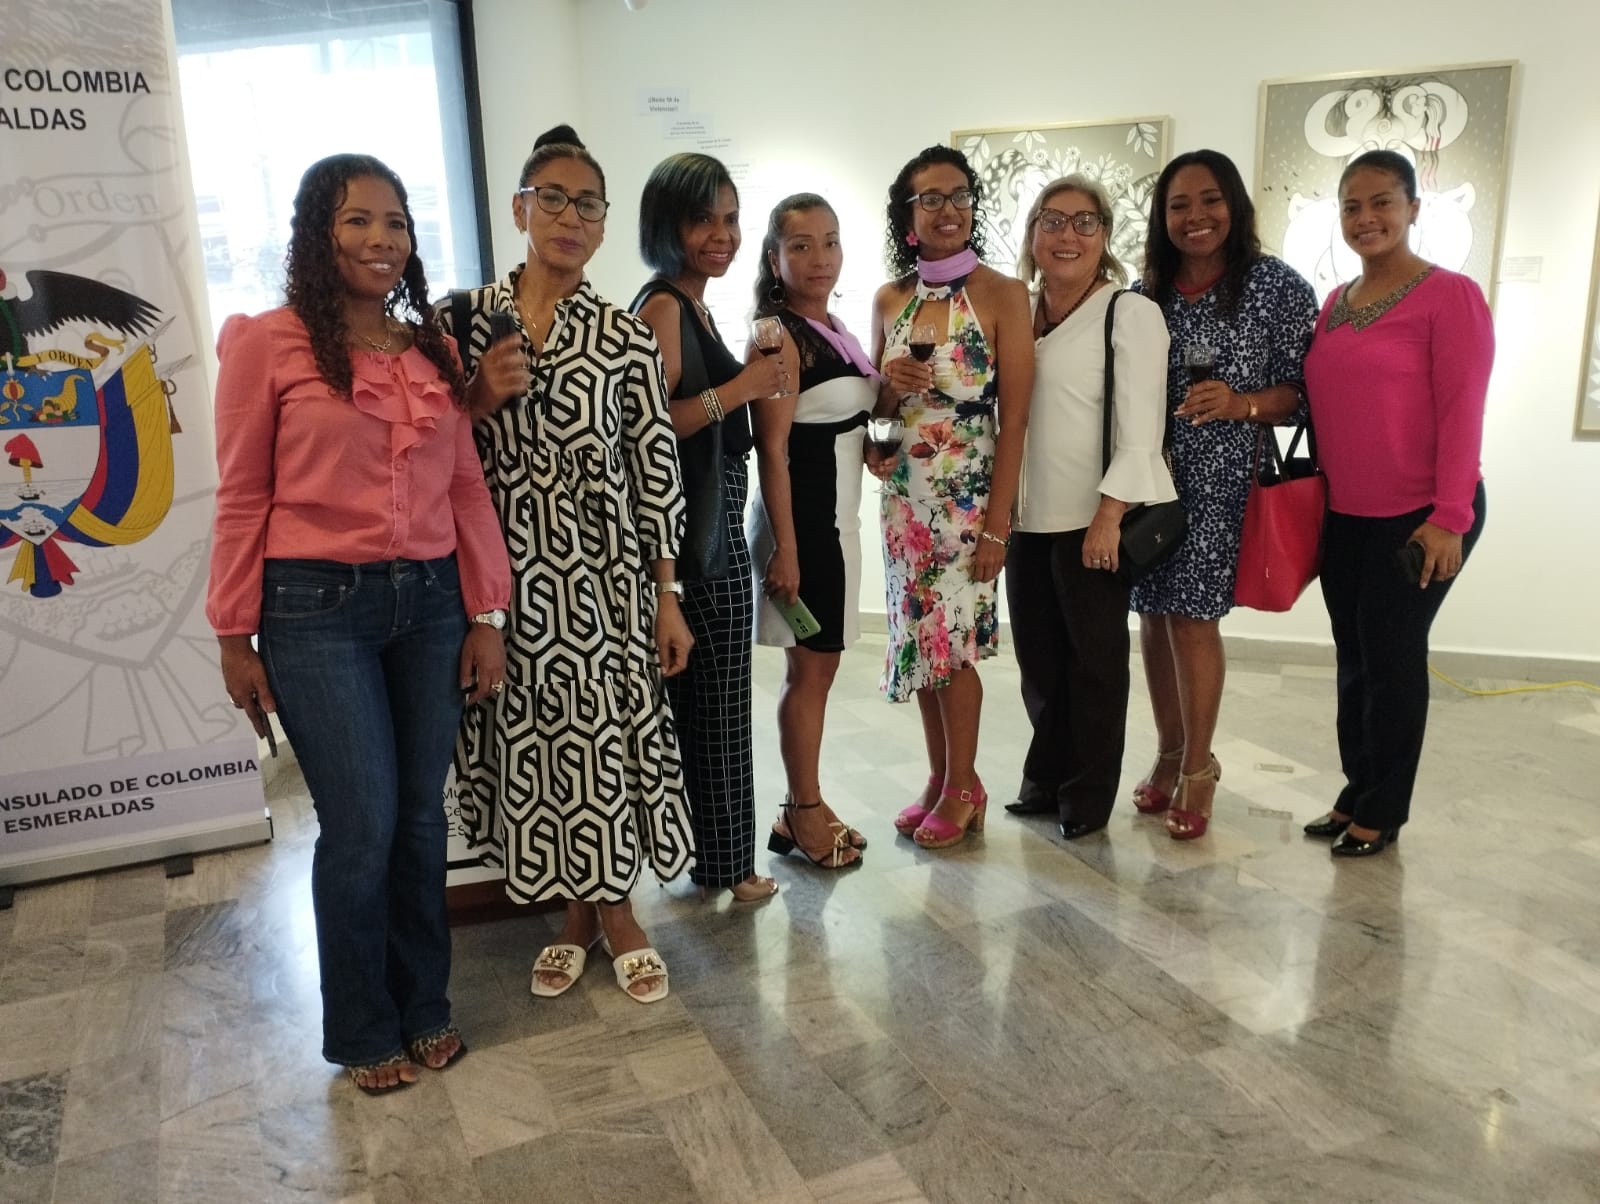 Consulado de Colombia en Esmeraldas realizó y participó en varias actividades en conmemoración del Día Internacional de la Mujer